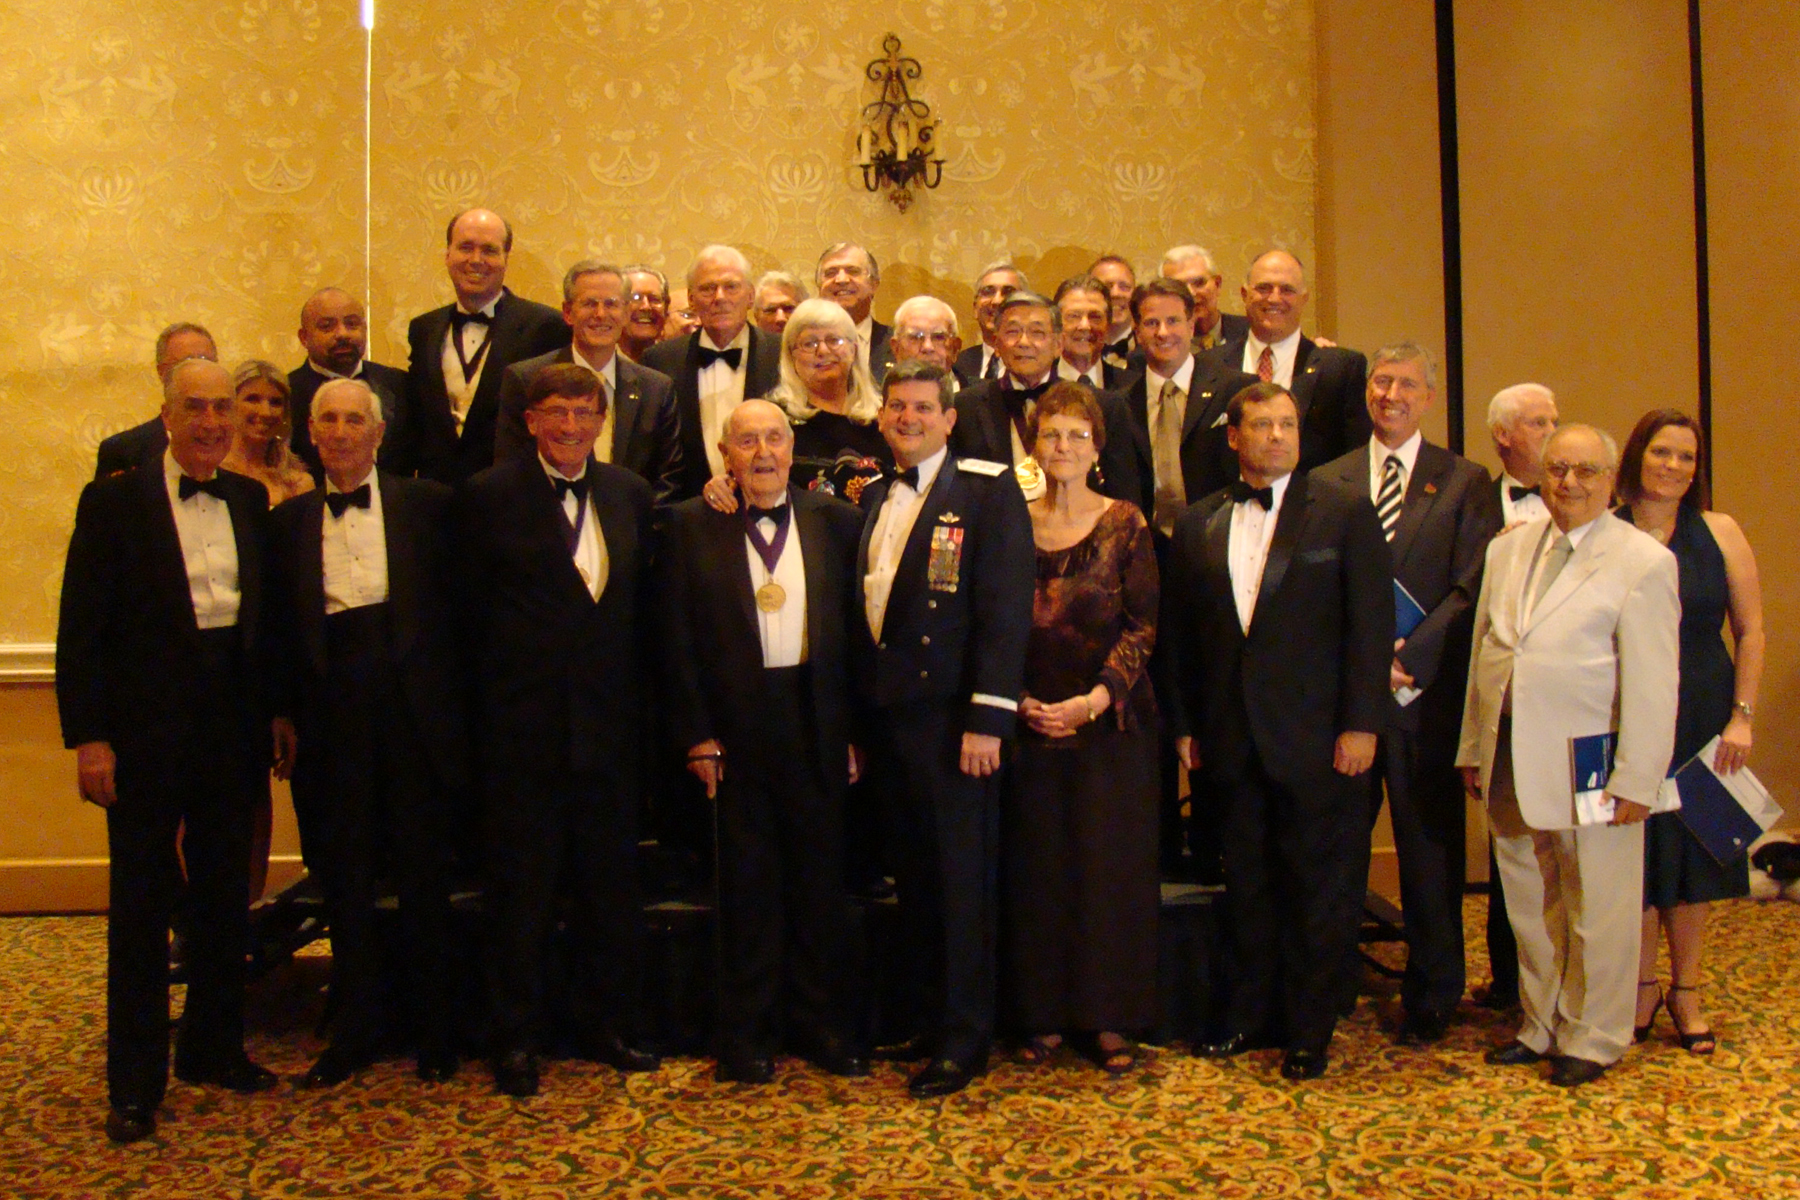 Tony Jannus Award Recipients & Board Members - 2, 30 Oct '08.jpg